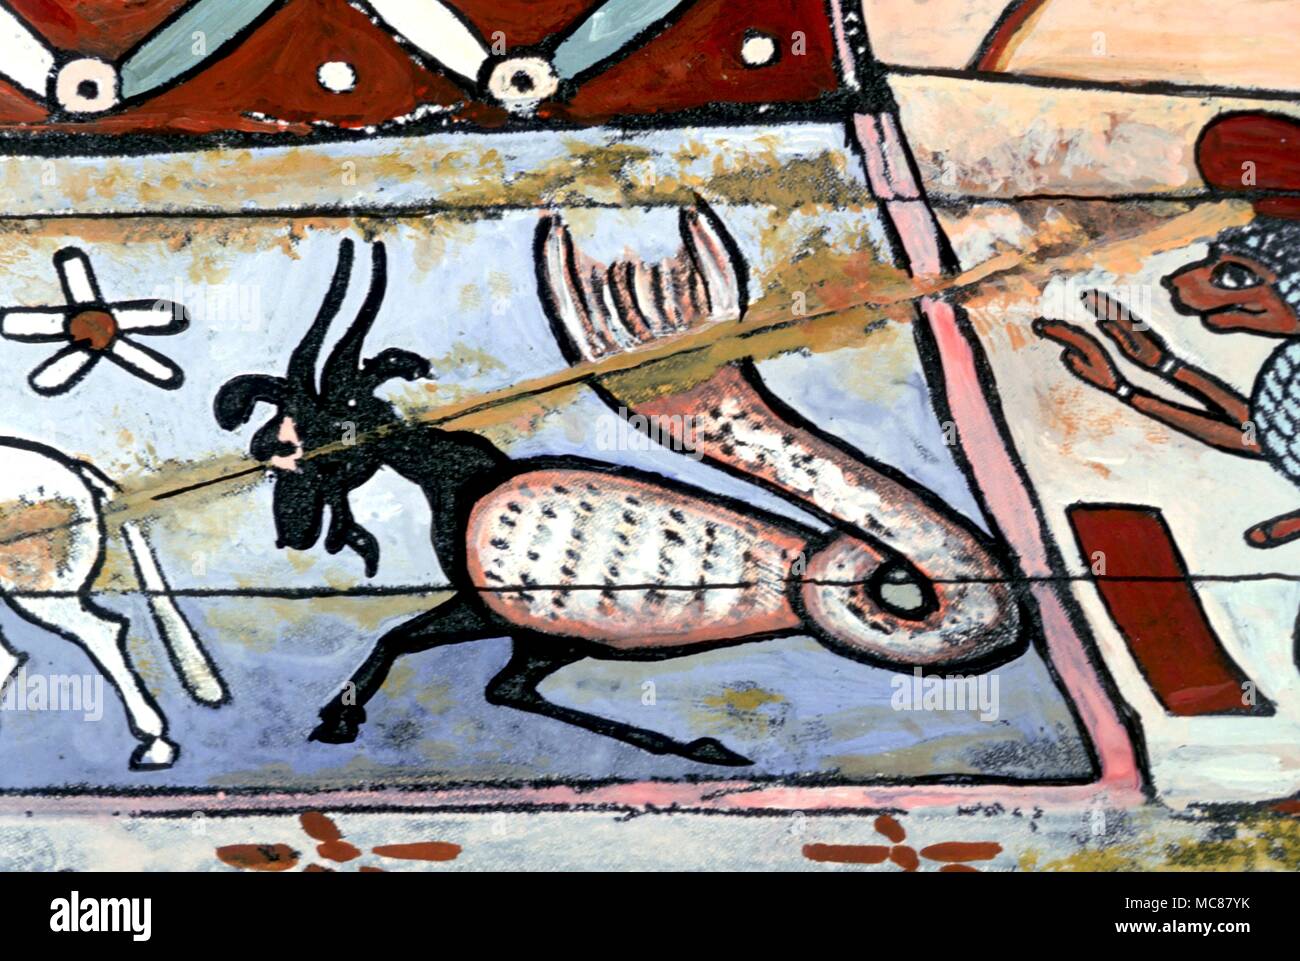 L'astrologie égyptienne. Le signe du zodiaque Capricorne peint sur le couvercle intérieur du cercueil d'une momie égyptienne. Deuxième siècle de notre ère. Banque D'Images